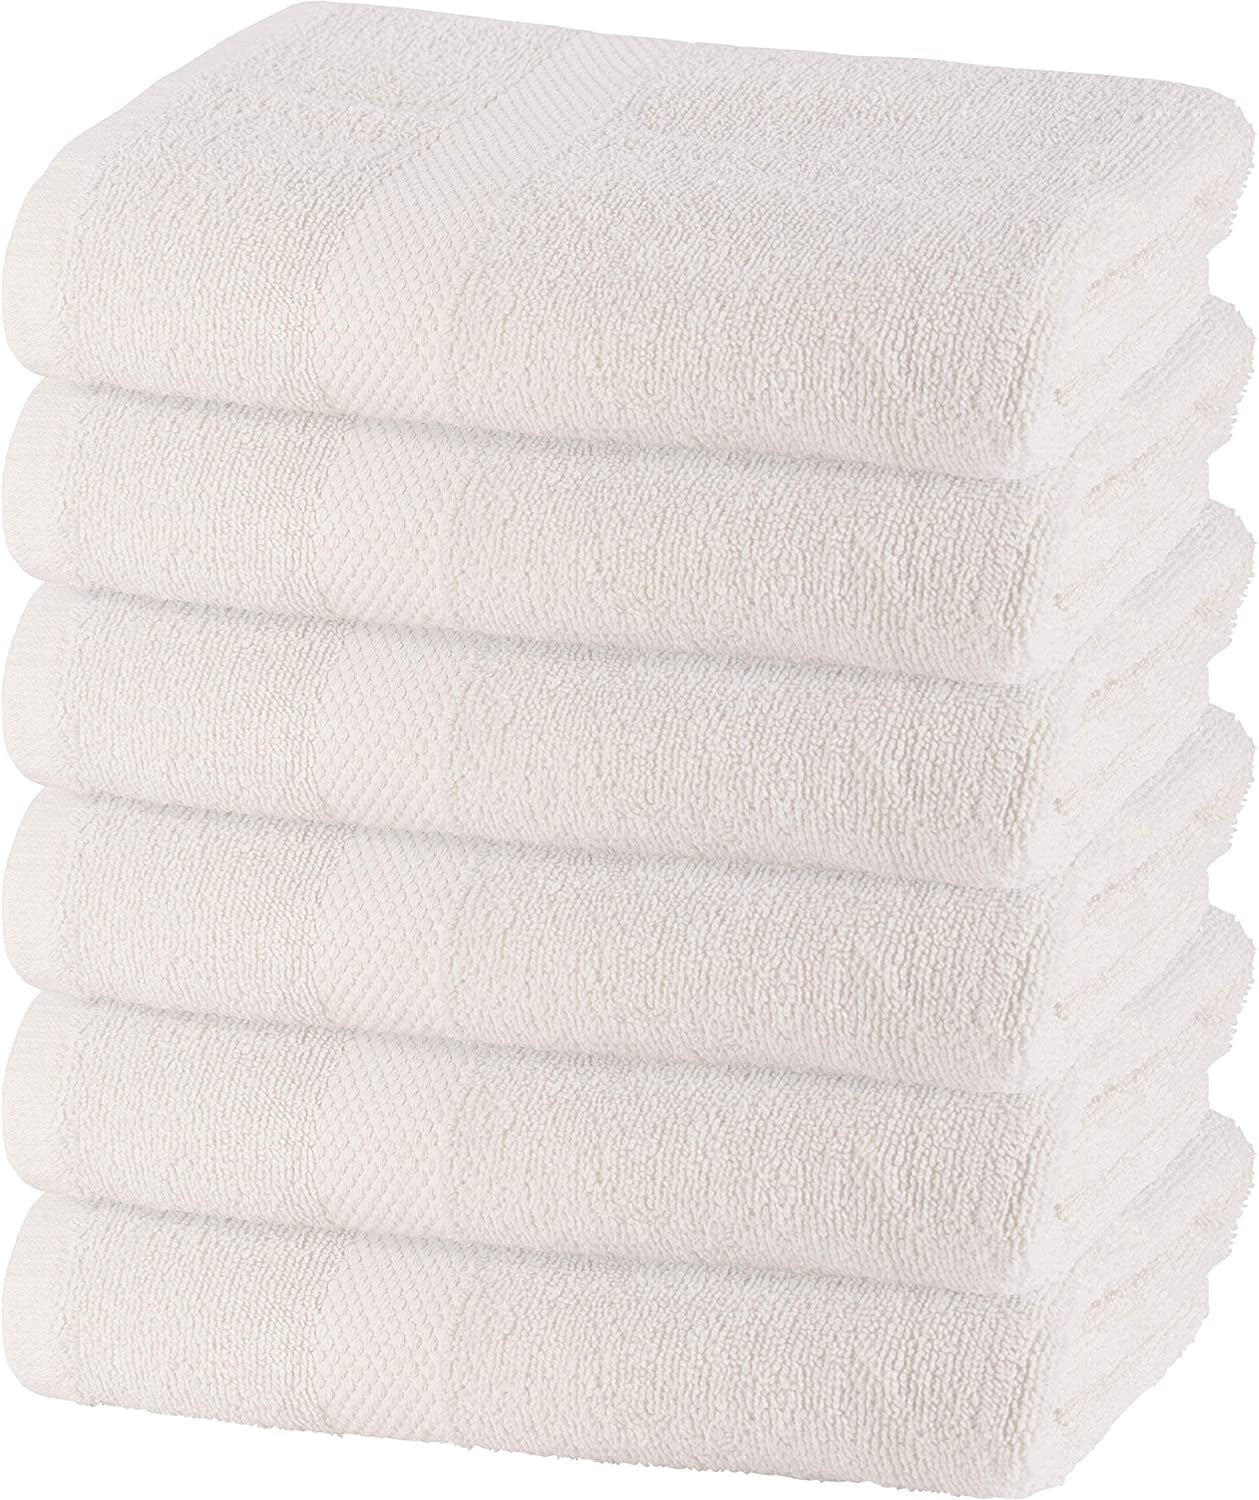 3 GUEST TOWELS GYM TOWEL LARGE FACE CLOTH 30x50cms 100% Cotton 